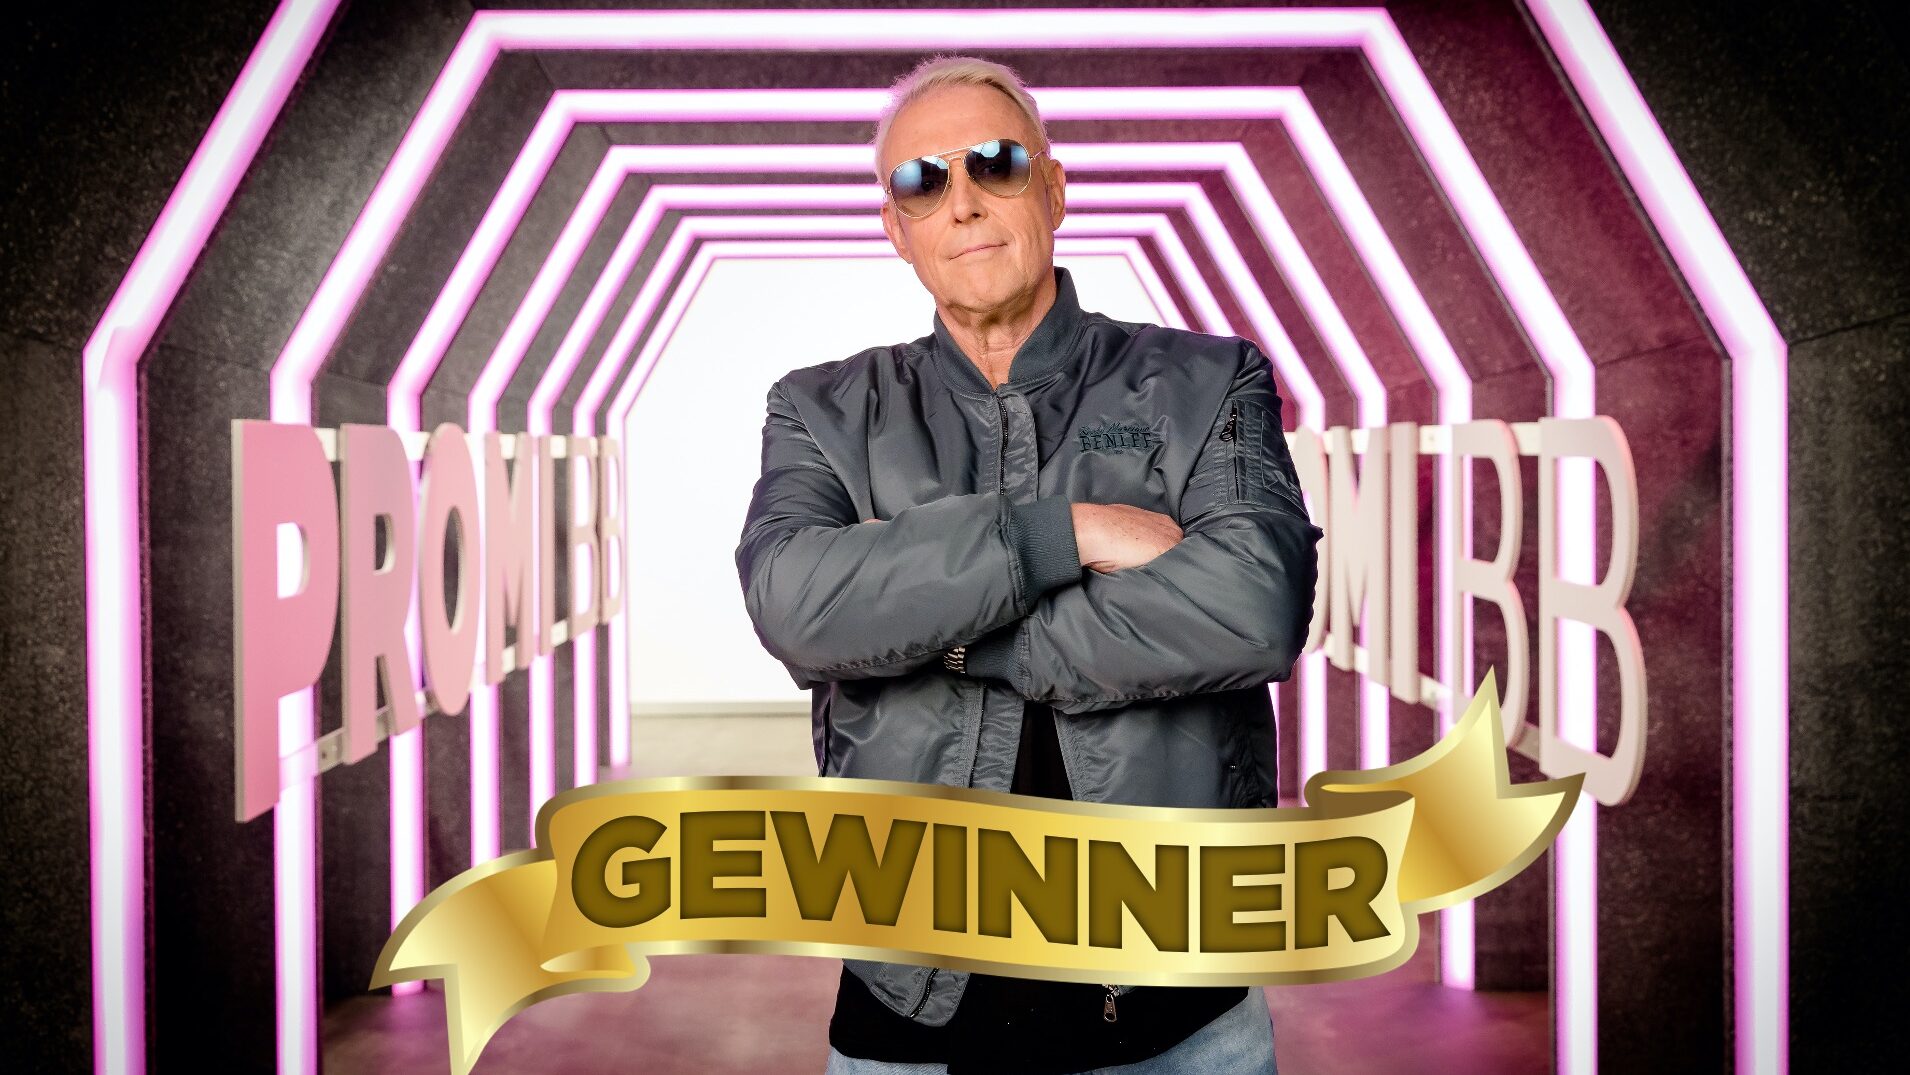 Promi Big Brother 2022 Gewinner: Rainer Gottwald gewinnt Staffel 10 2